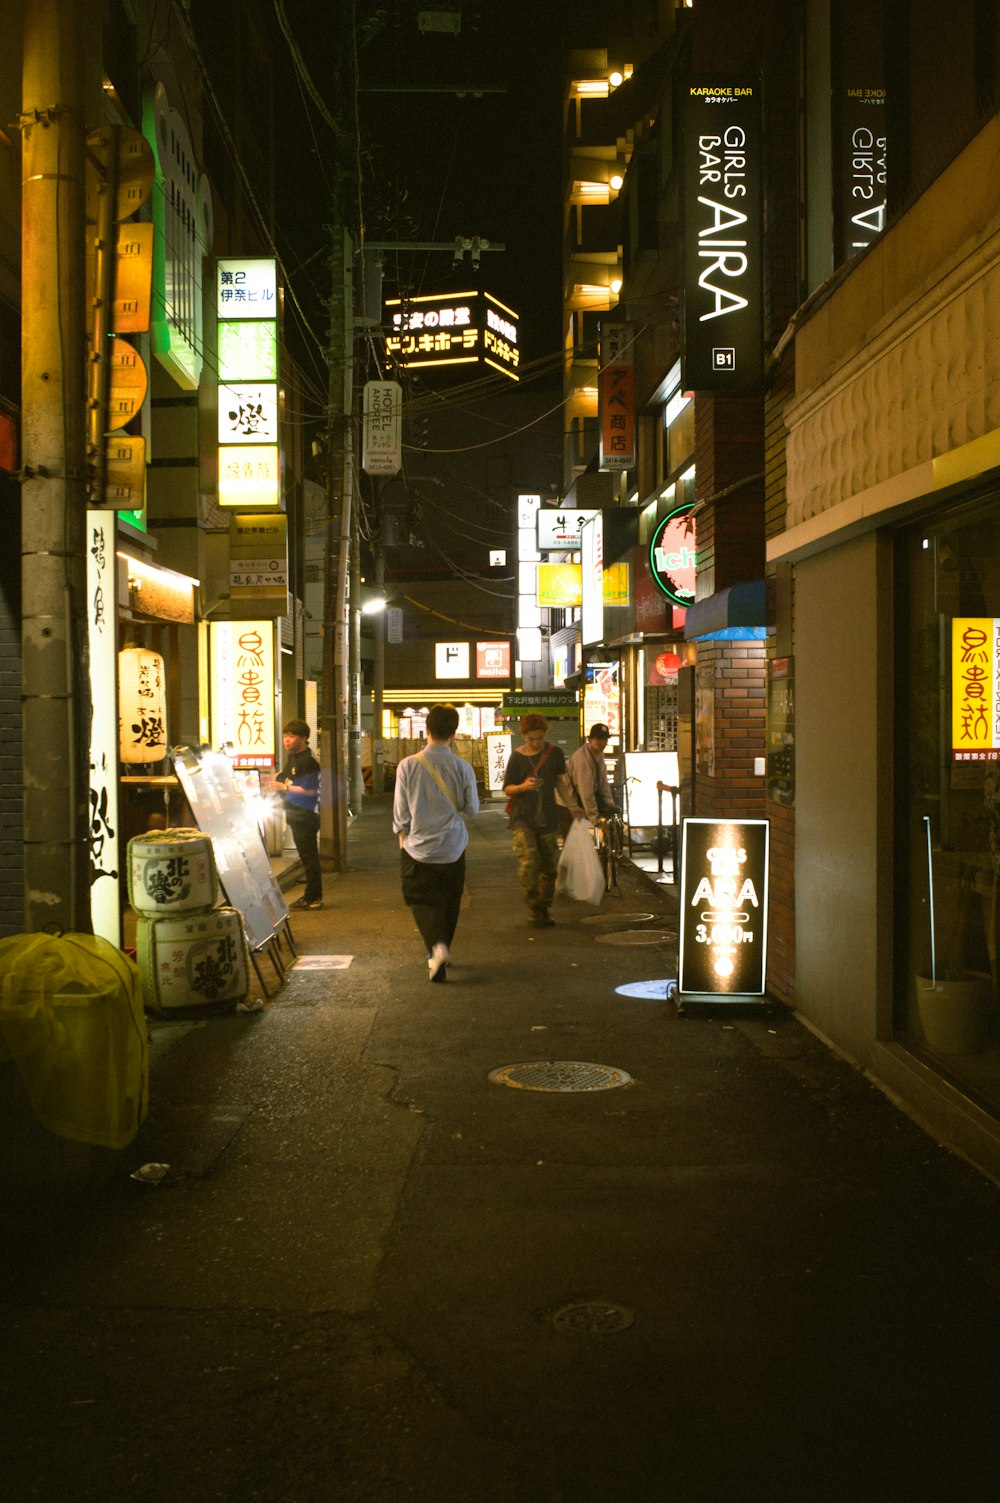 una persona caminando por una calle de noche